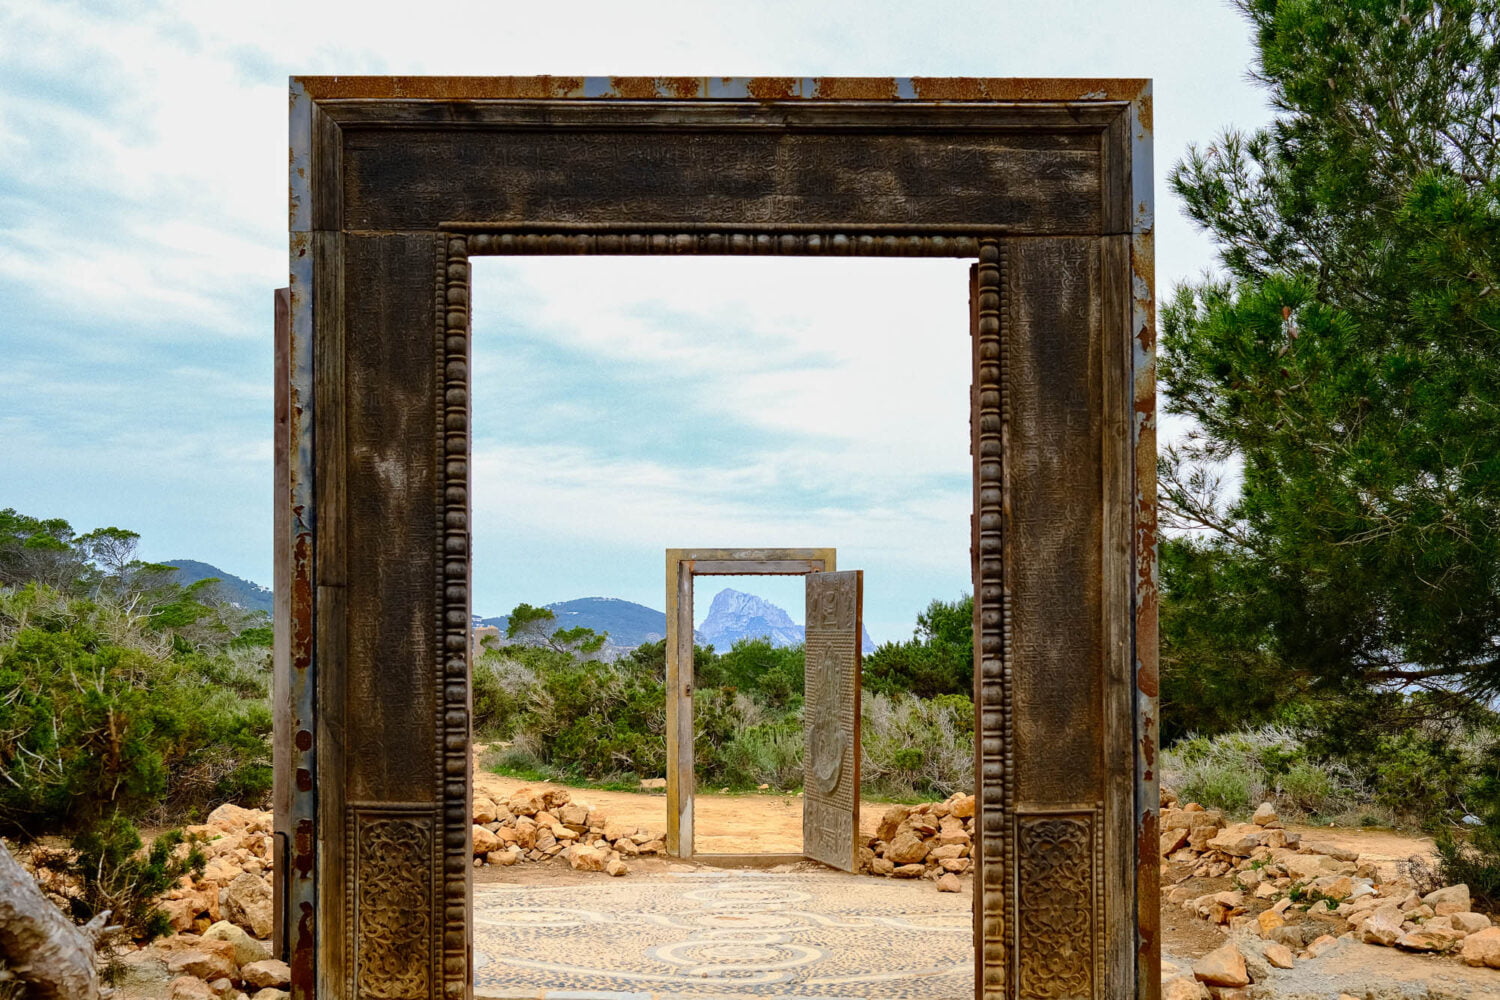 Doors of Es Vedra artwork in Ibiza